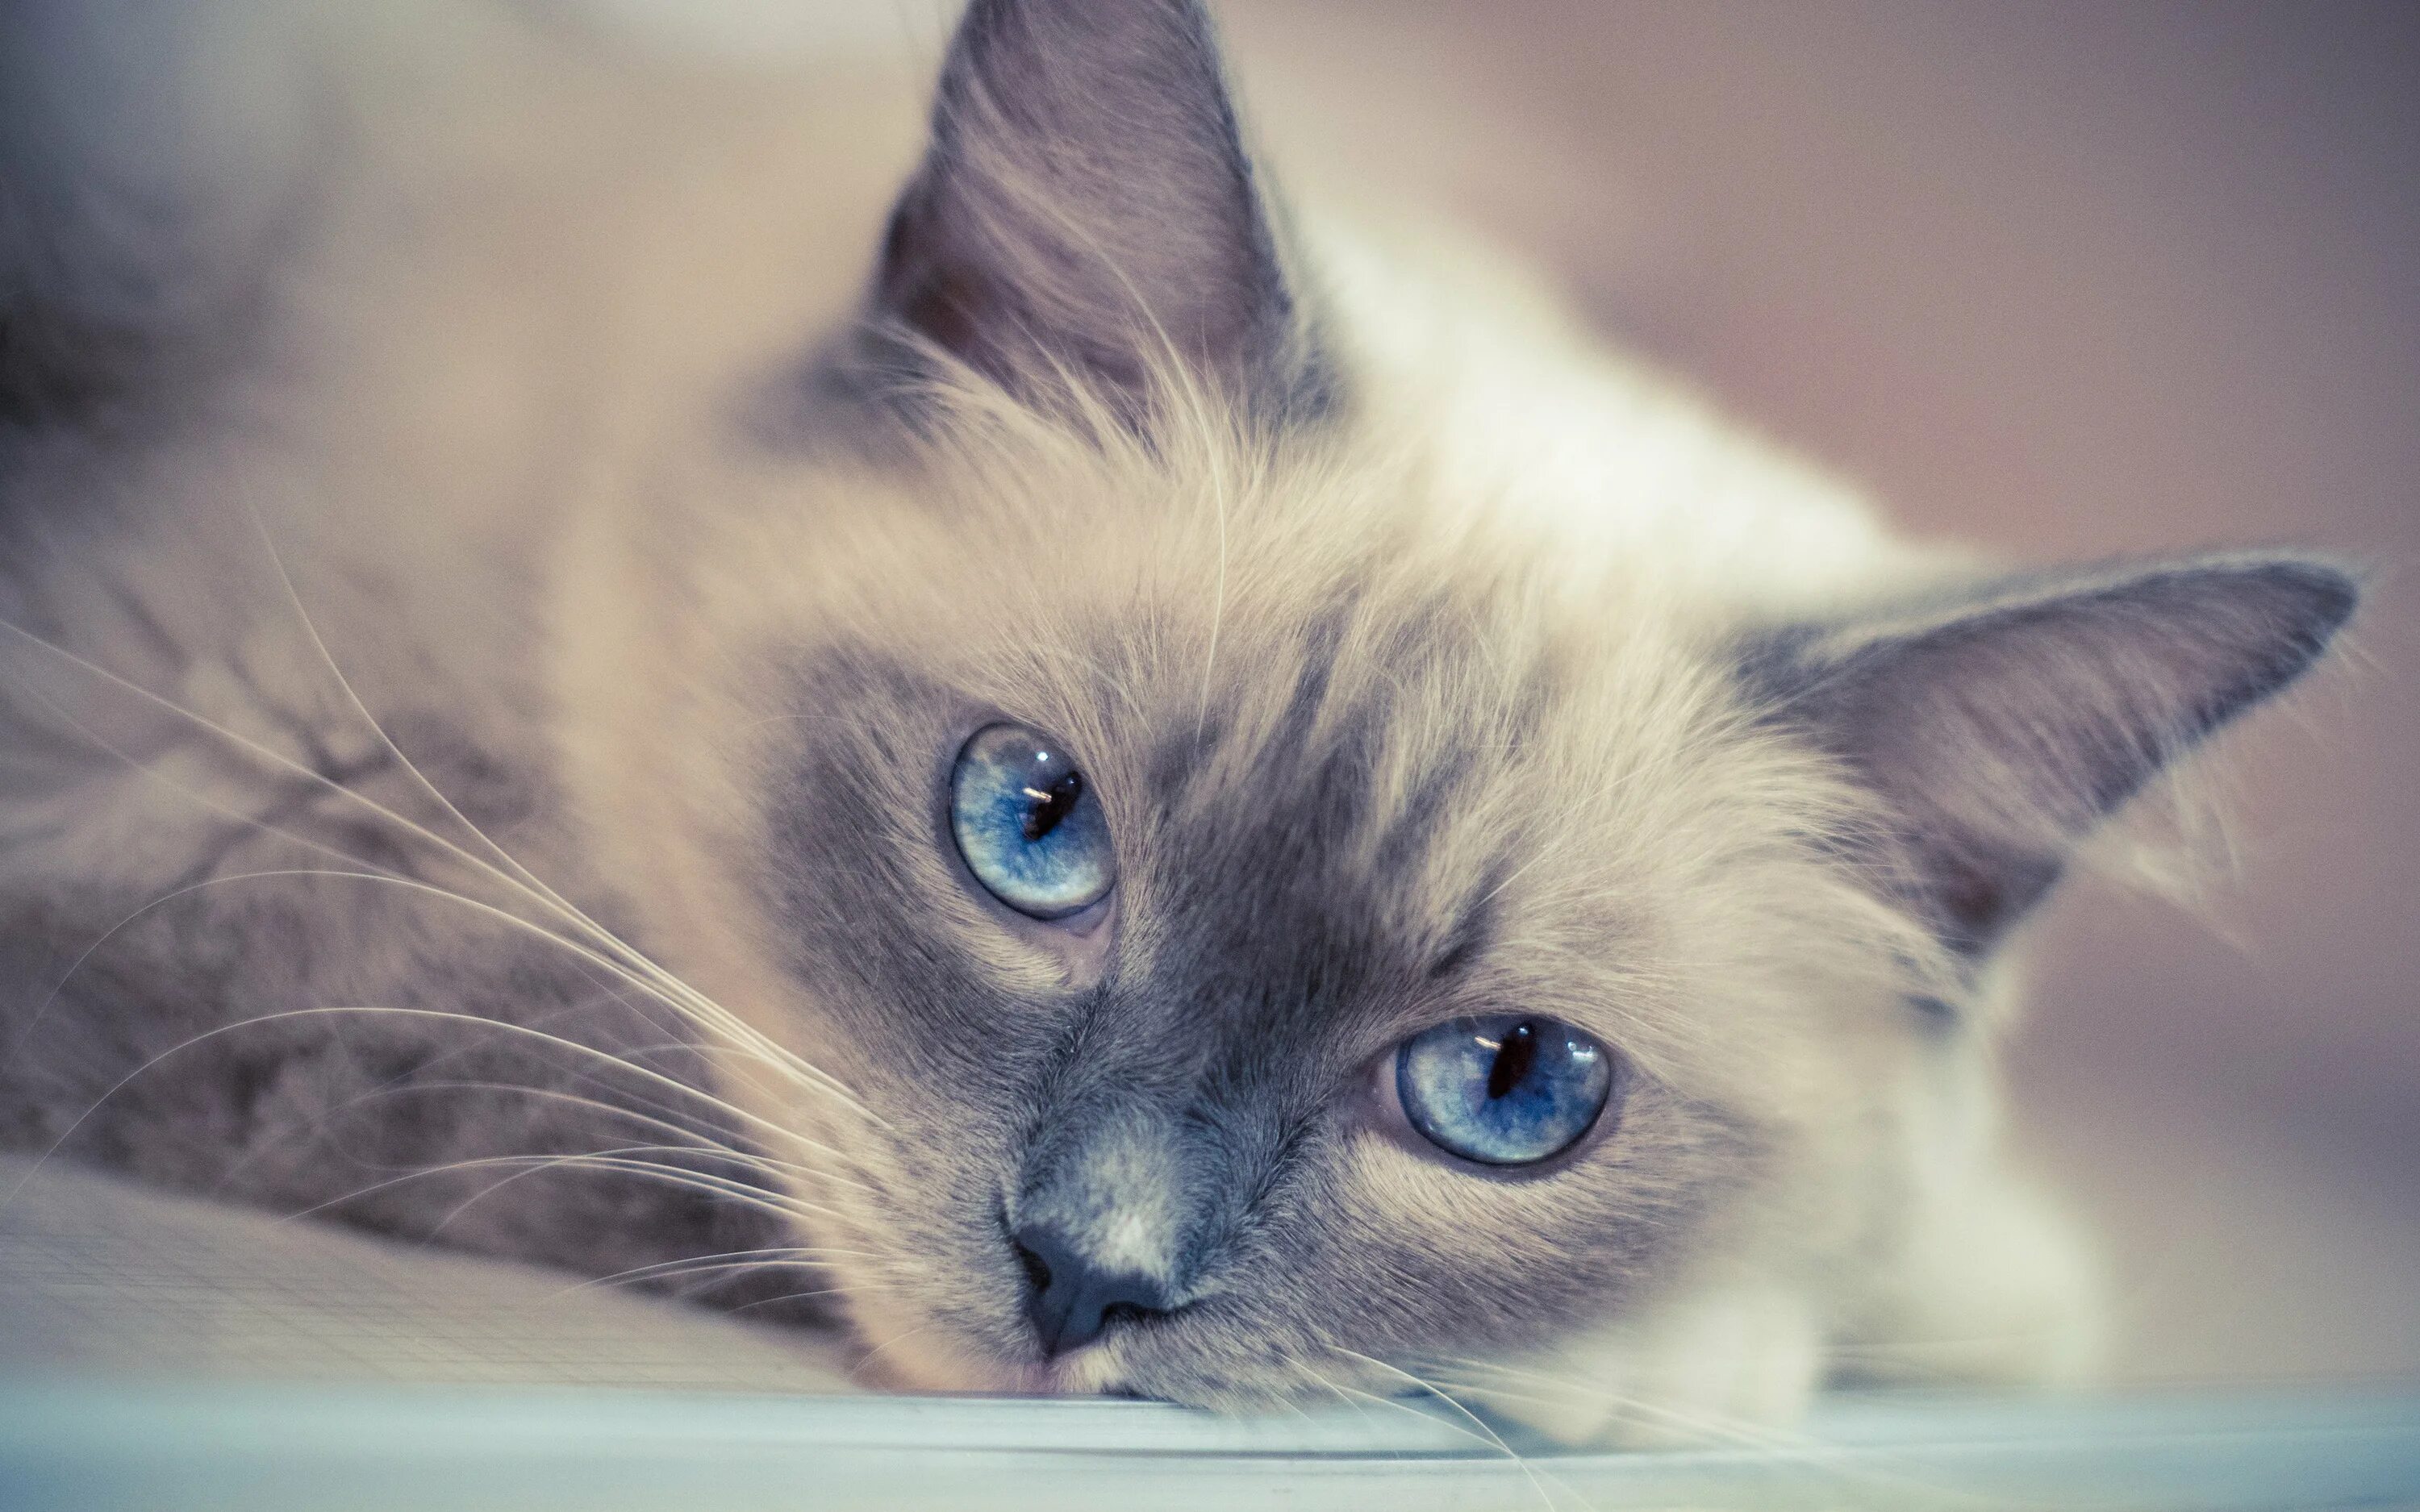 Обои на телефон красивых котиков. Кошка Рэгдолл голубоглазый. Кошка с голубыми глазами. Кошки с глупыми глазами. Красивый кот.